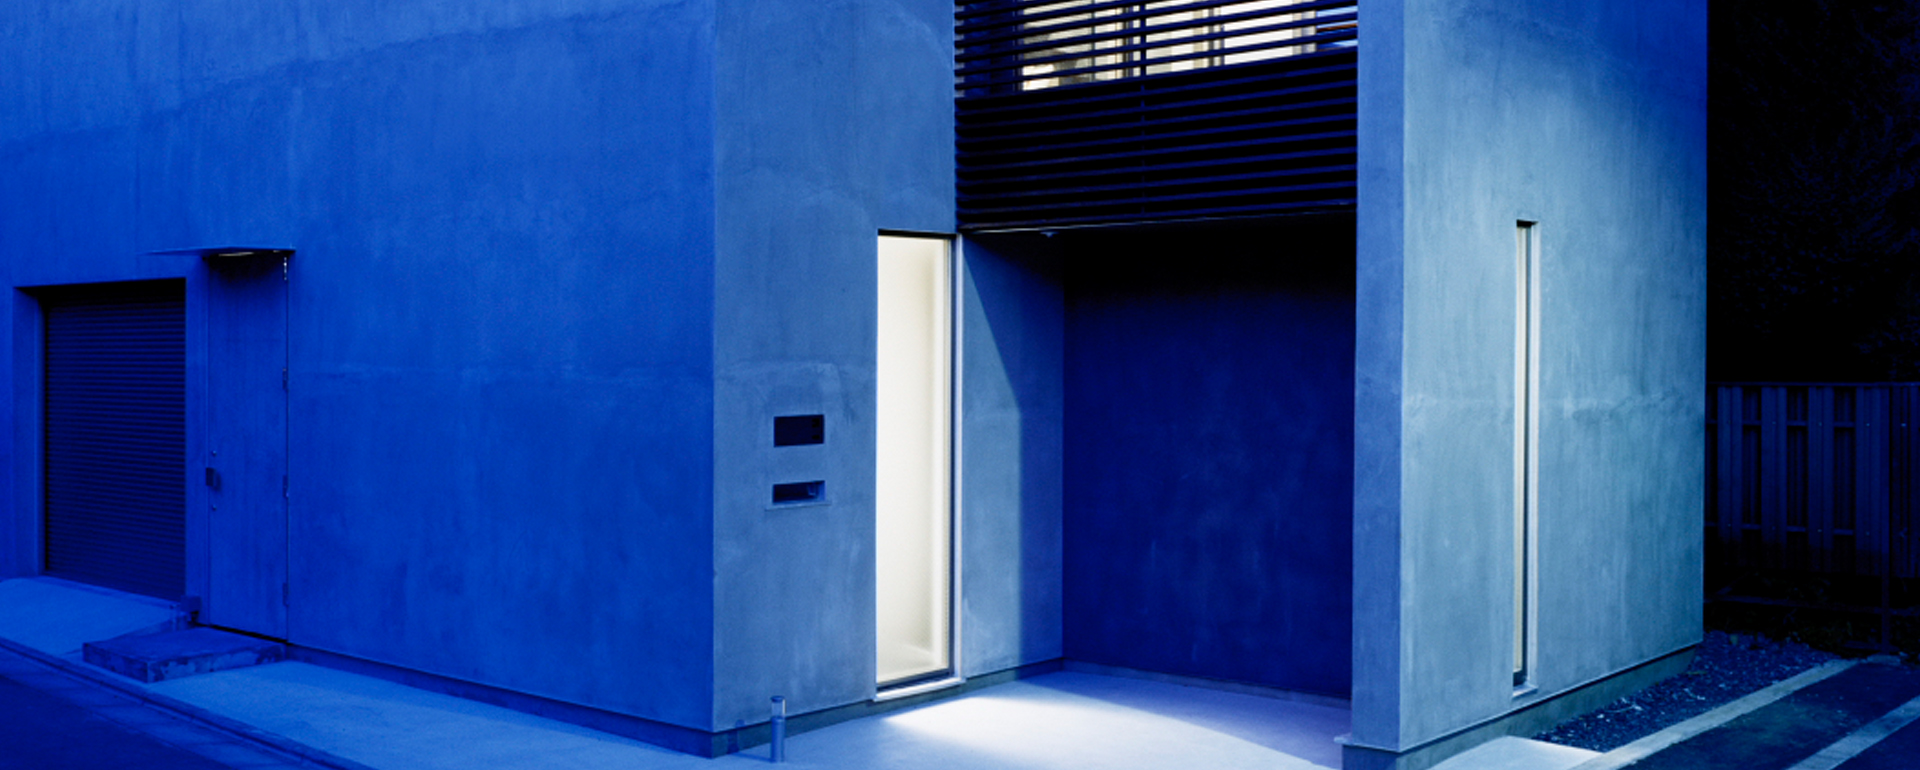 O House by Kimizuka Architects